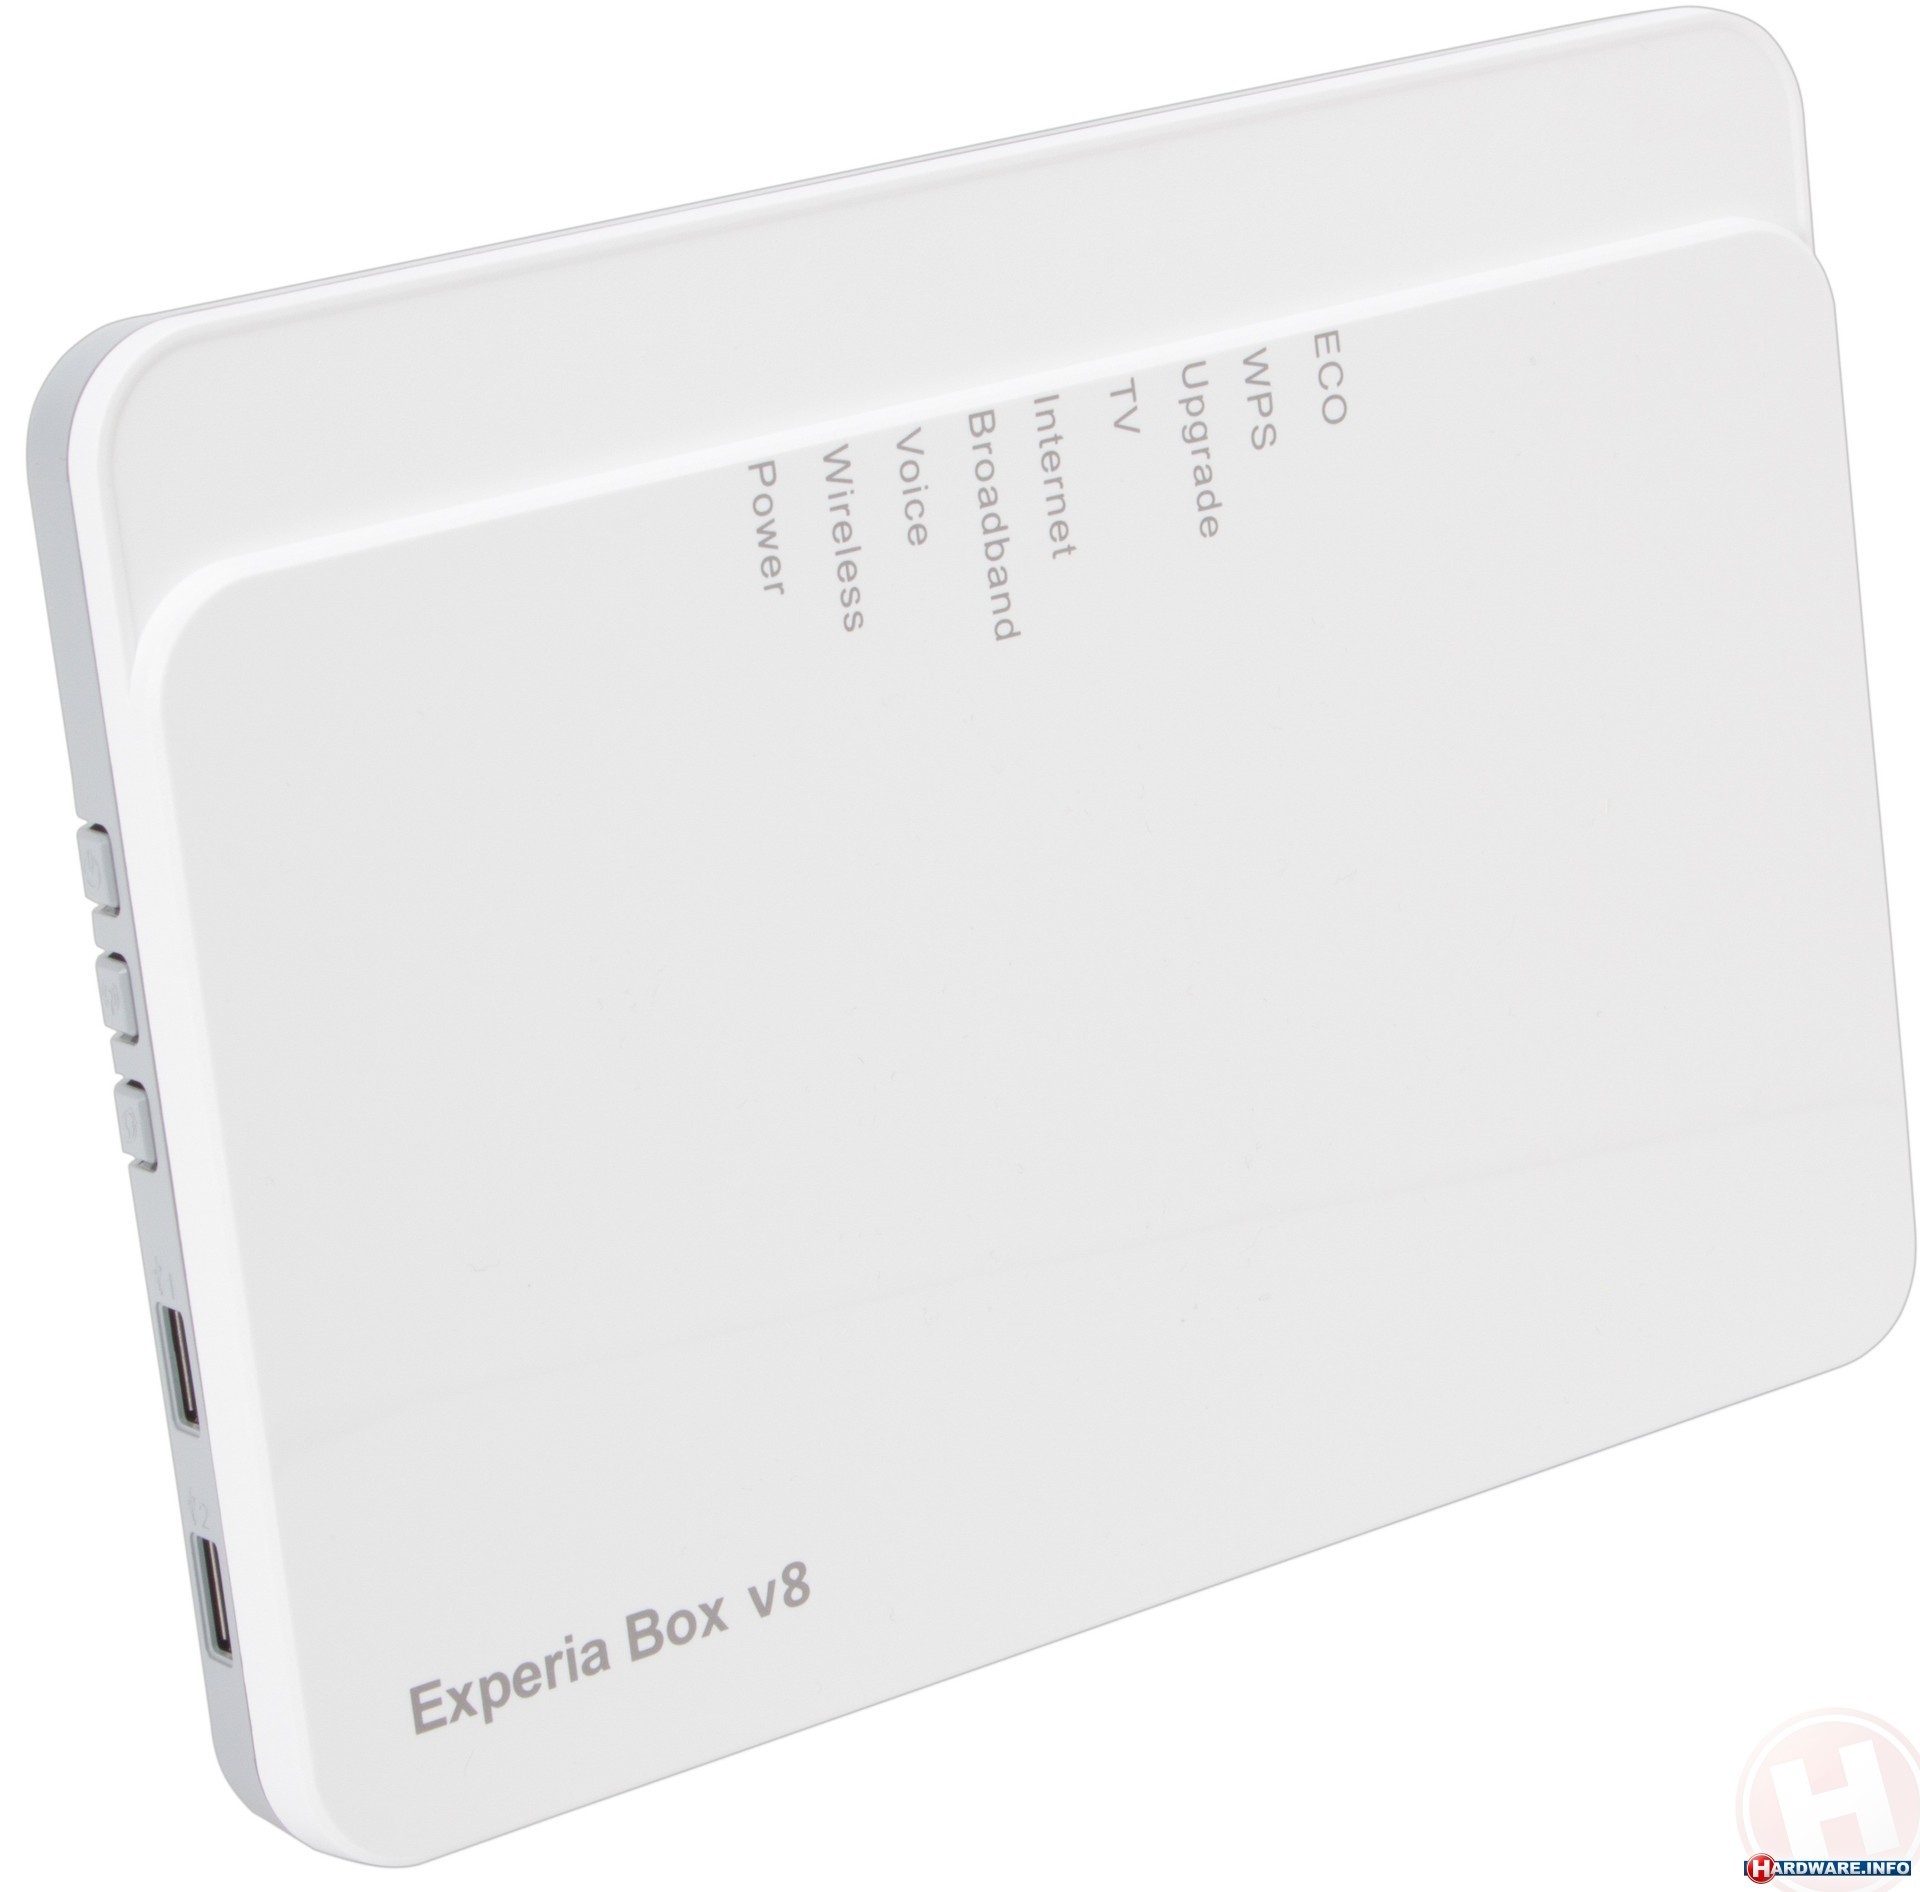 lila Eik ozon Arcadyan Telfort Experia Box v8 router - Hardware Info